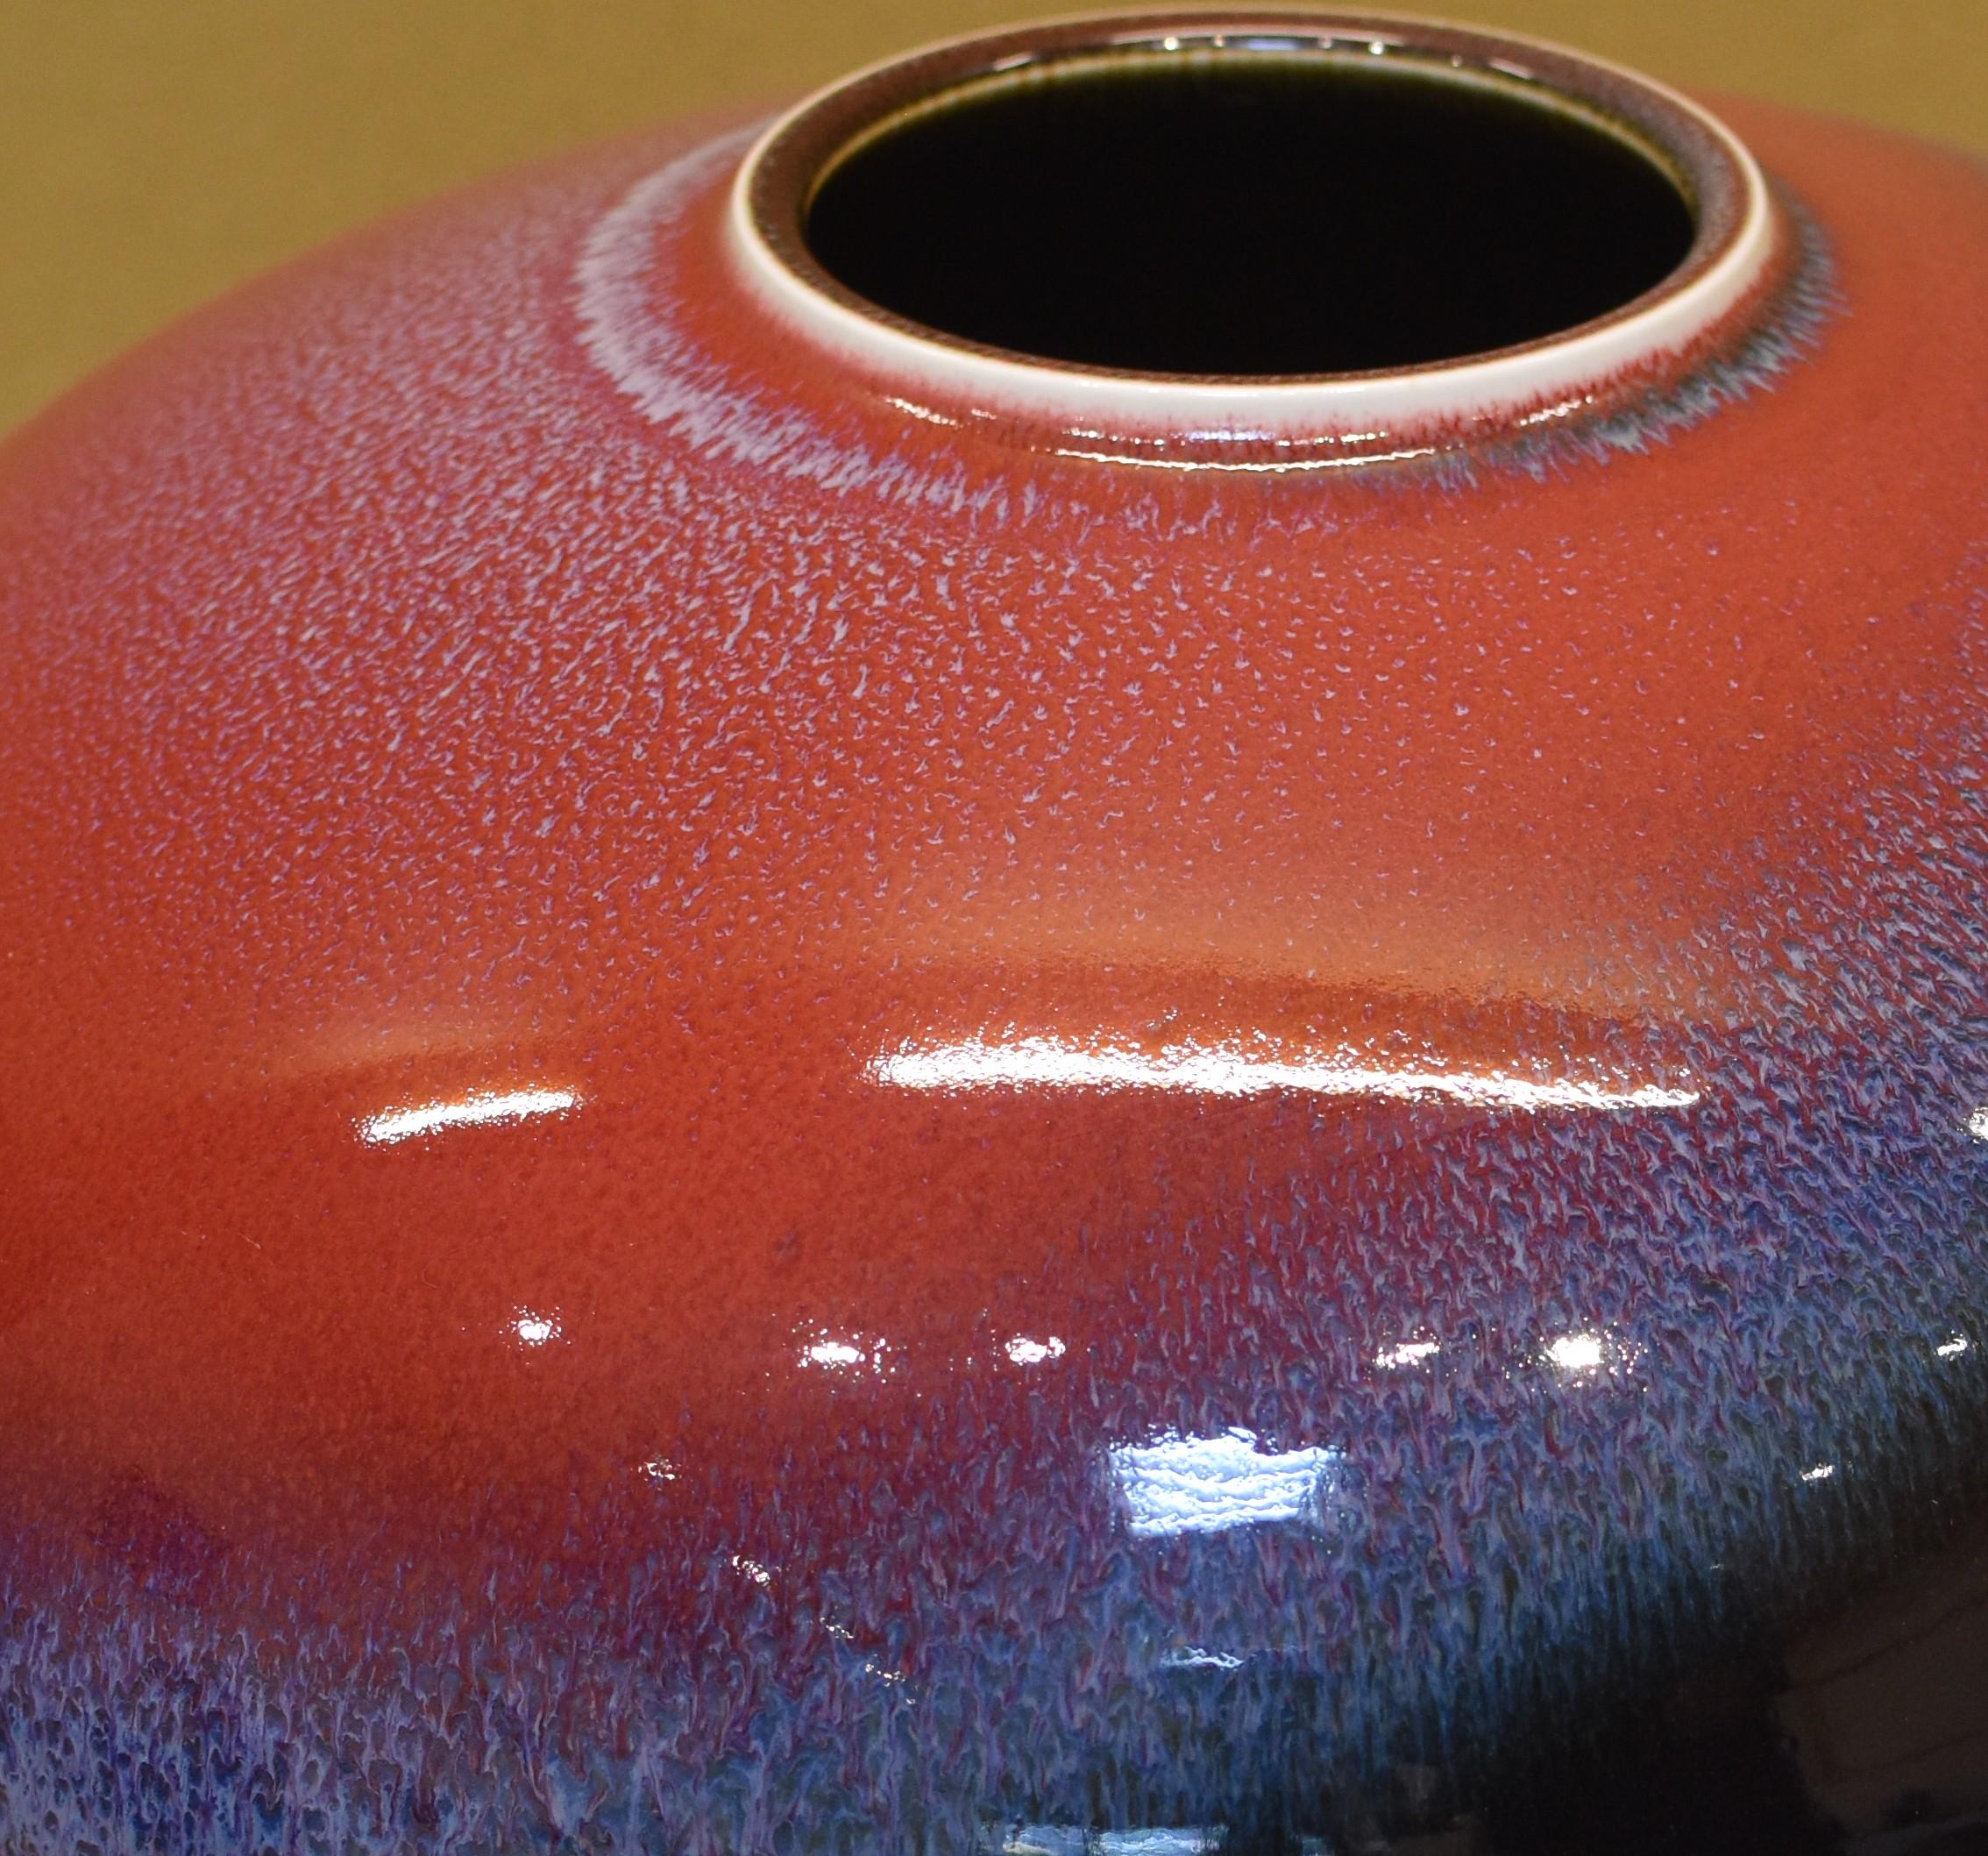 Faszinierende zeitgenössische dekorative japanische Porzellanvase von außergewöhnlichem Charme, ein Ausstellungsstück, das in lebhaftem Blau, Rot und Schwarz auf einem wunderschön geformten Körper von Hand glasiert ist. Die für den Künstler